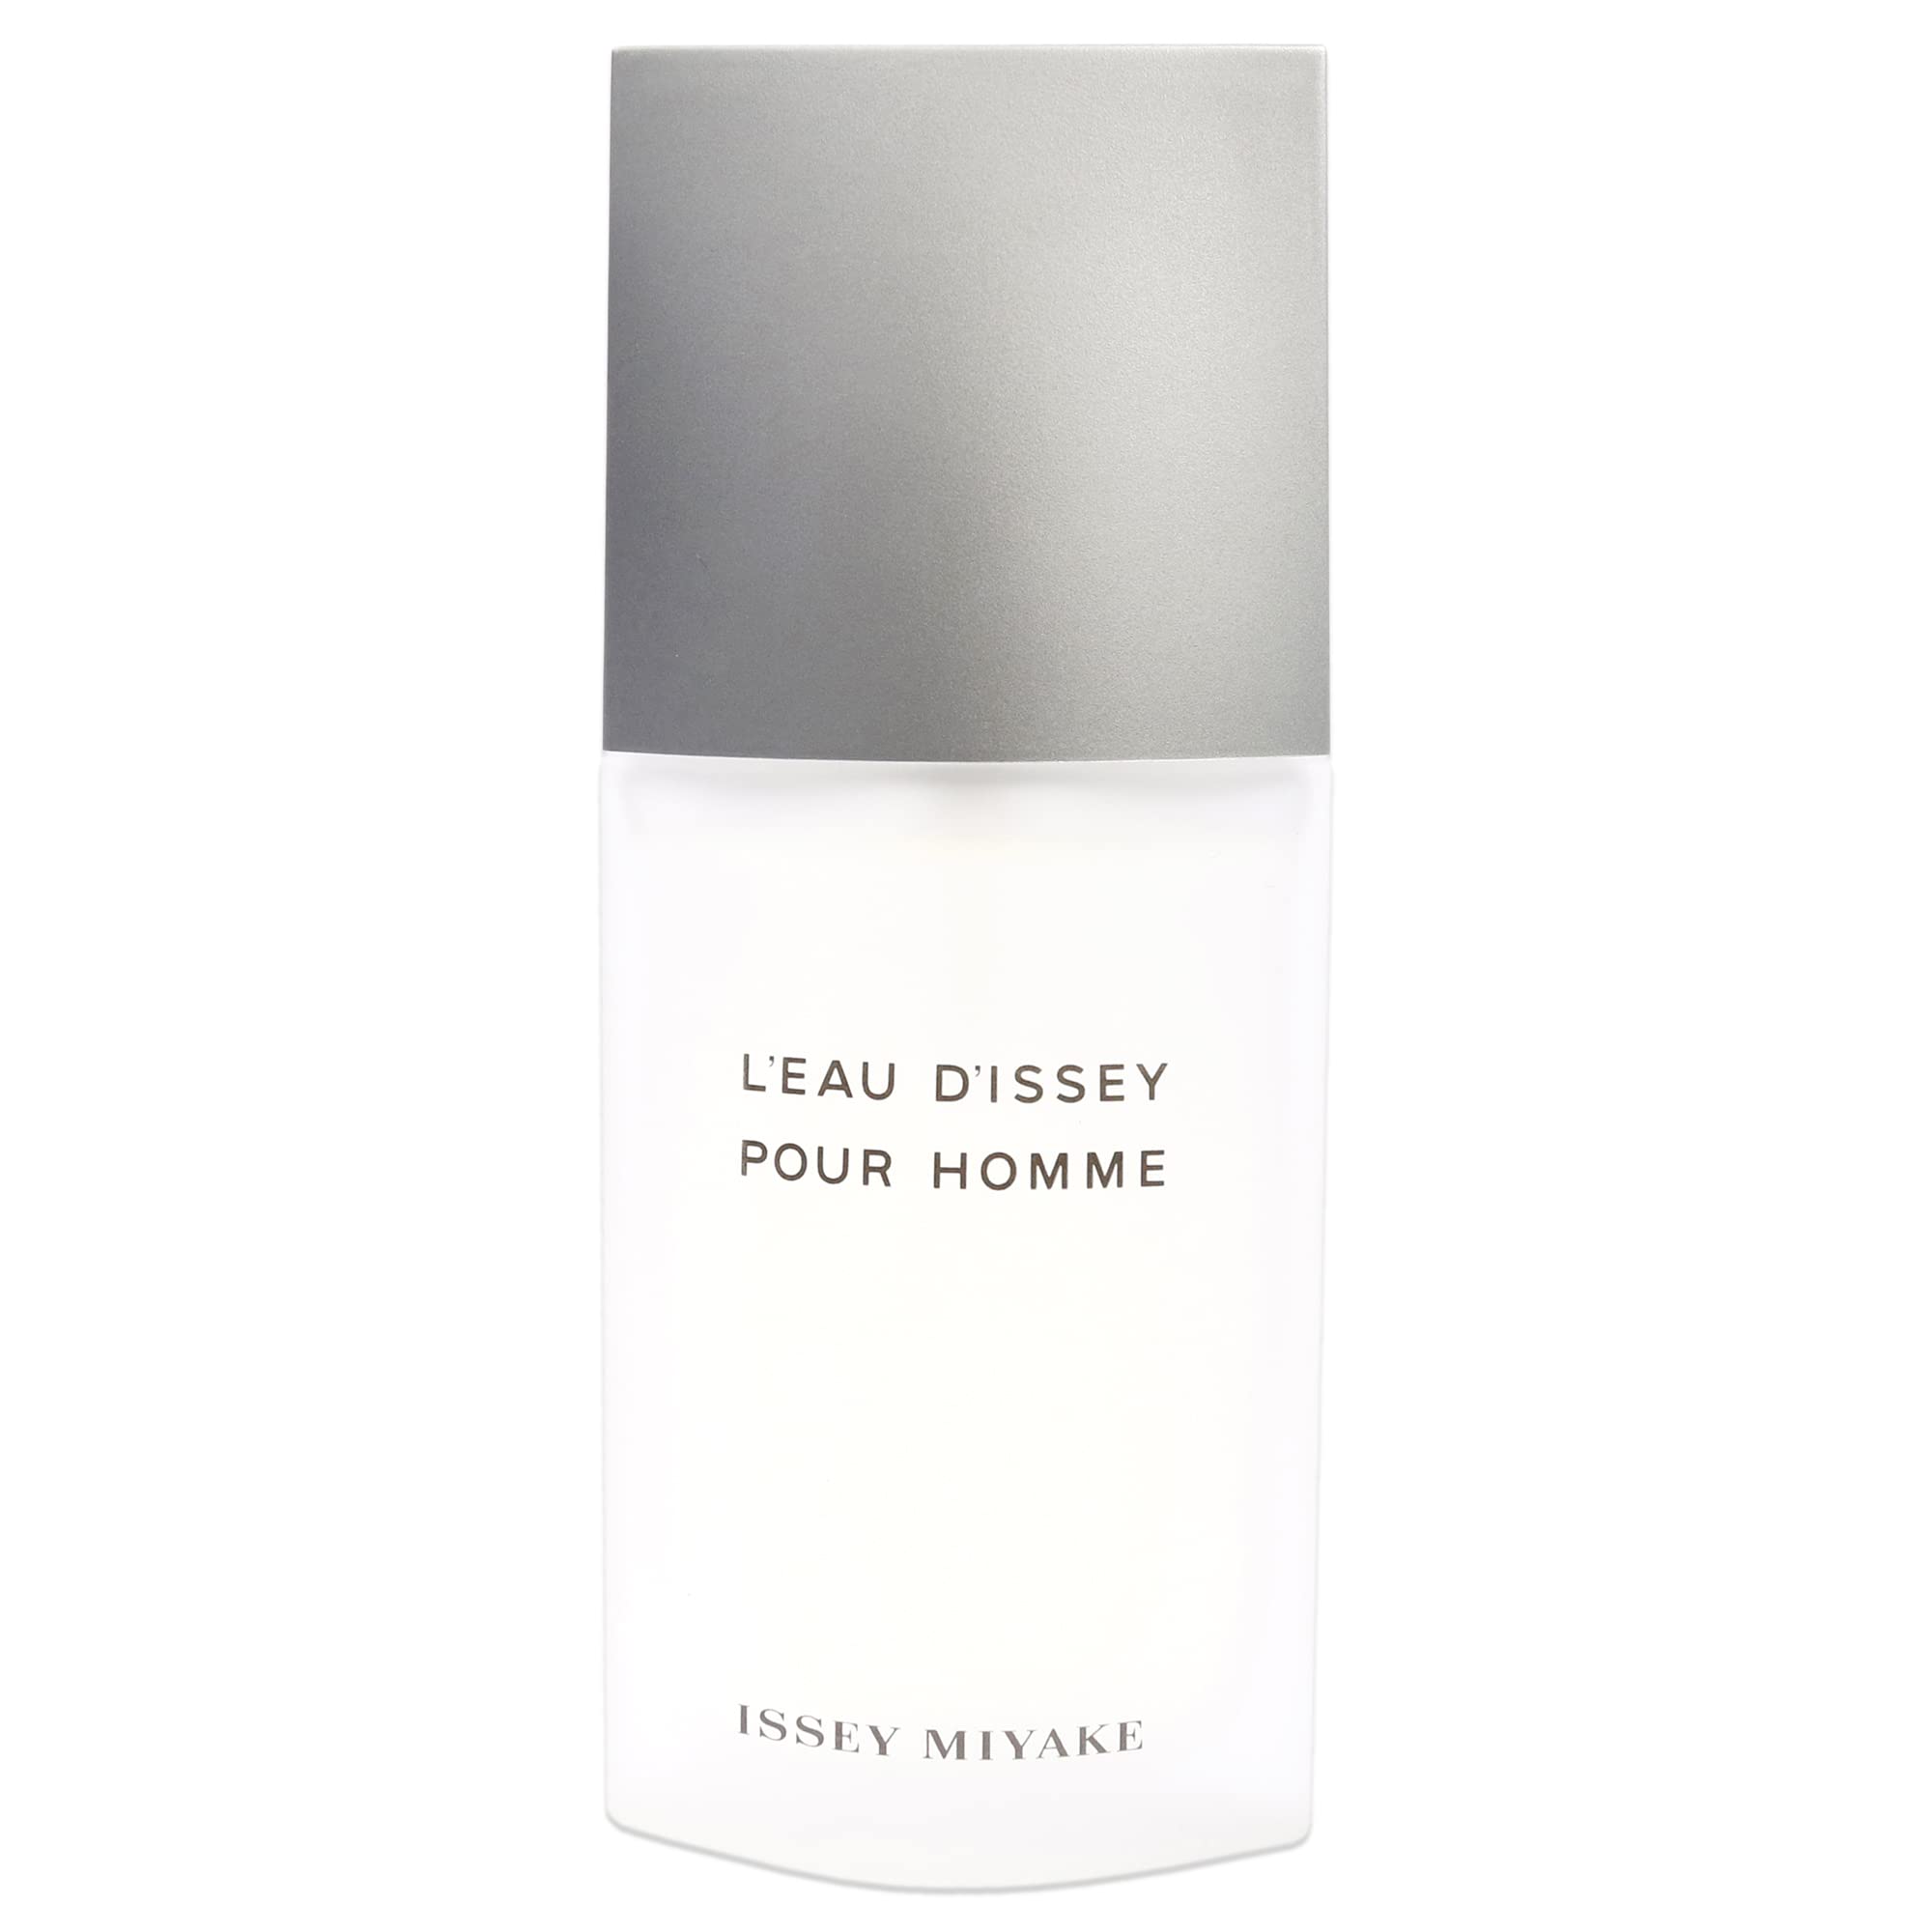 L'eau d'Issey Pour Homme by Issey Miyake 2.5 Fl Oz Eau de Toilette Spray